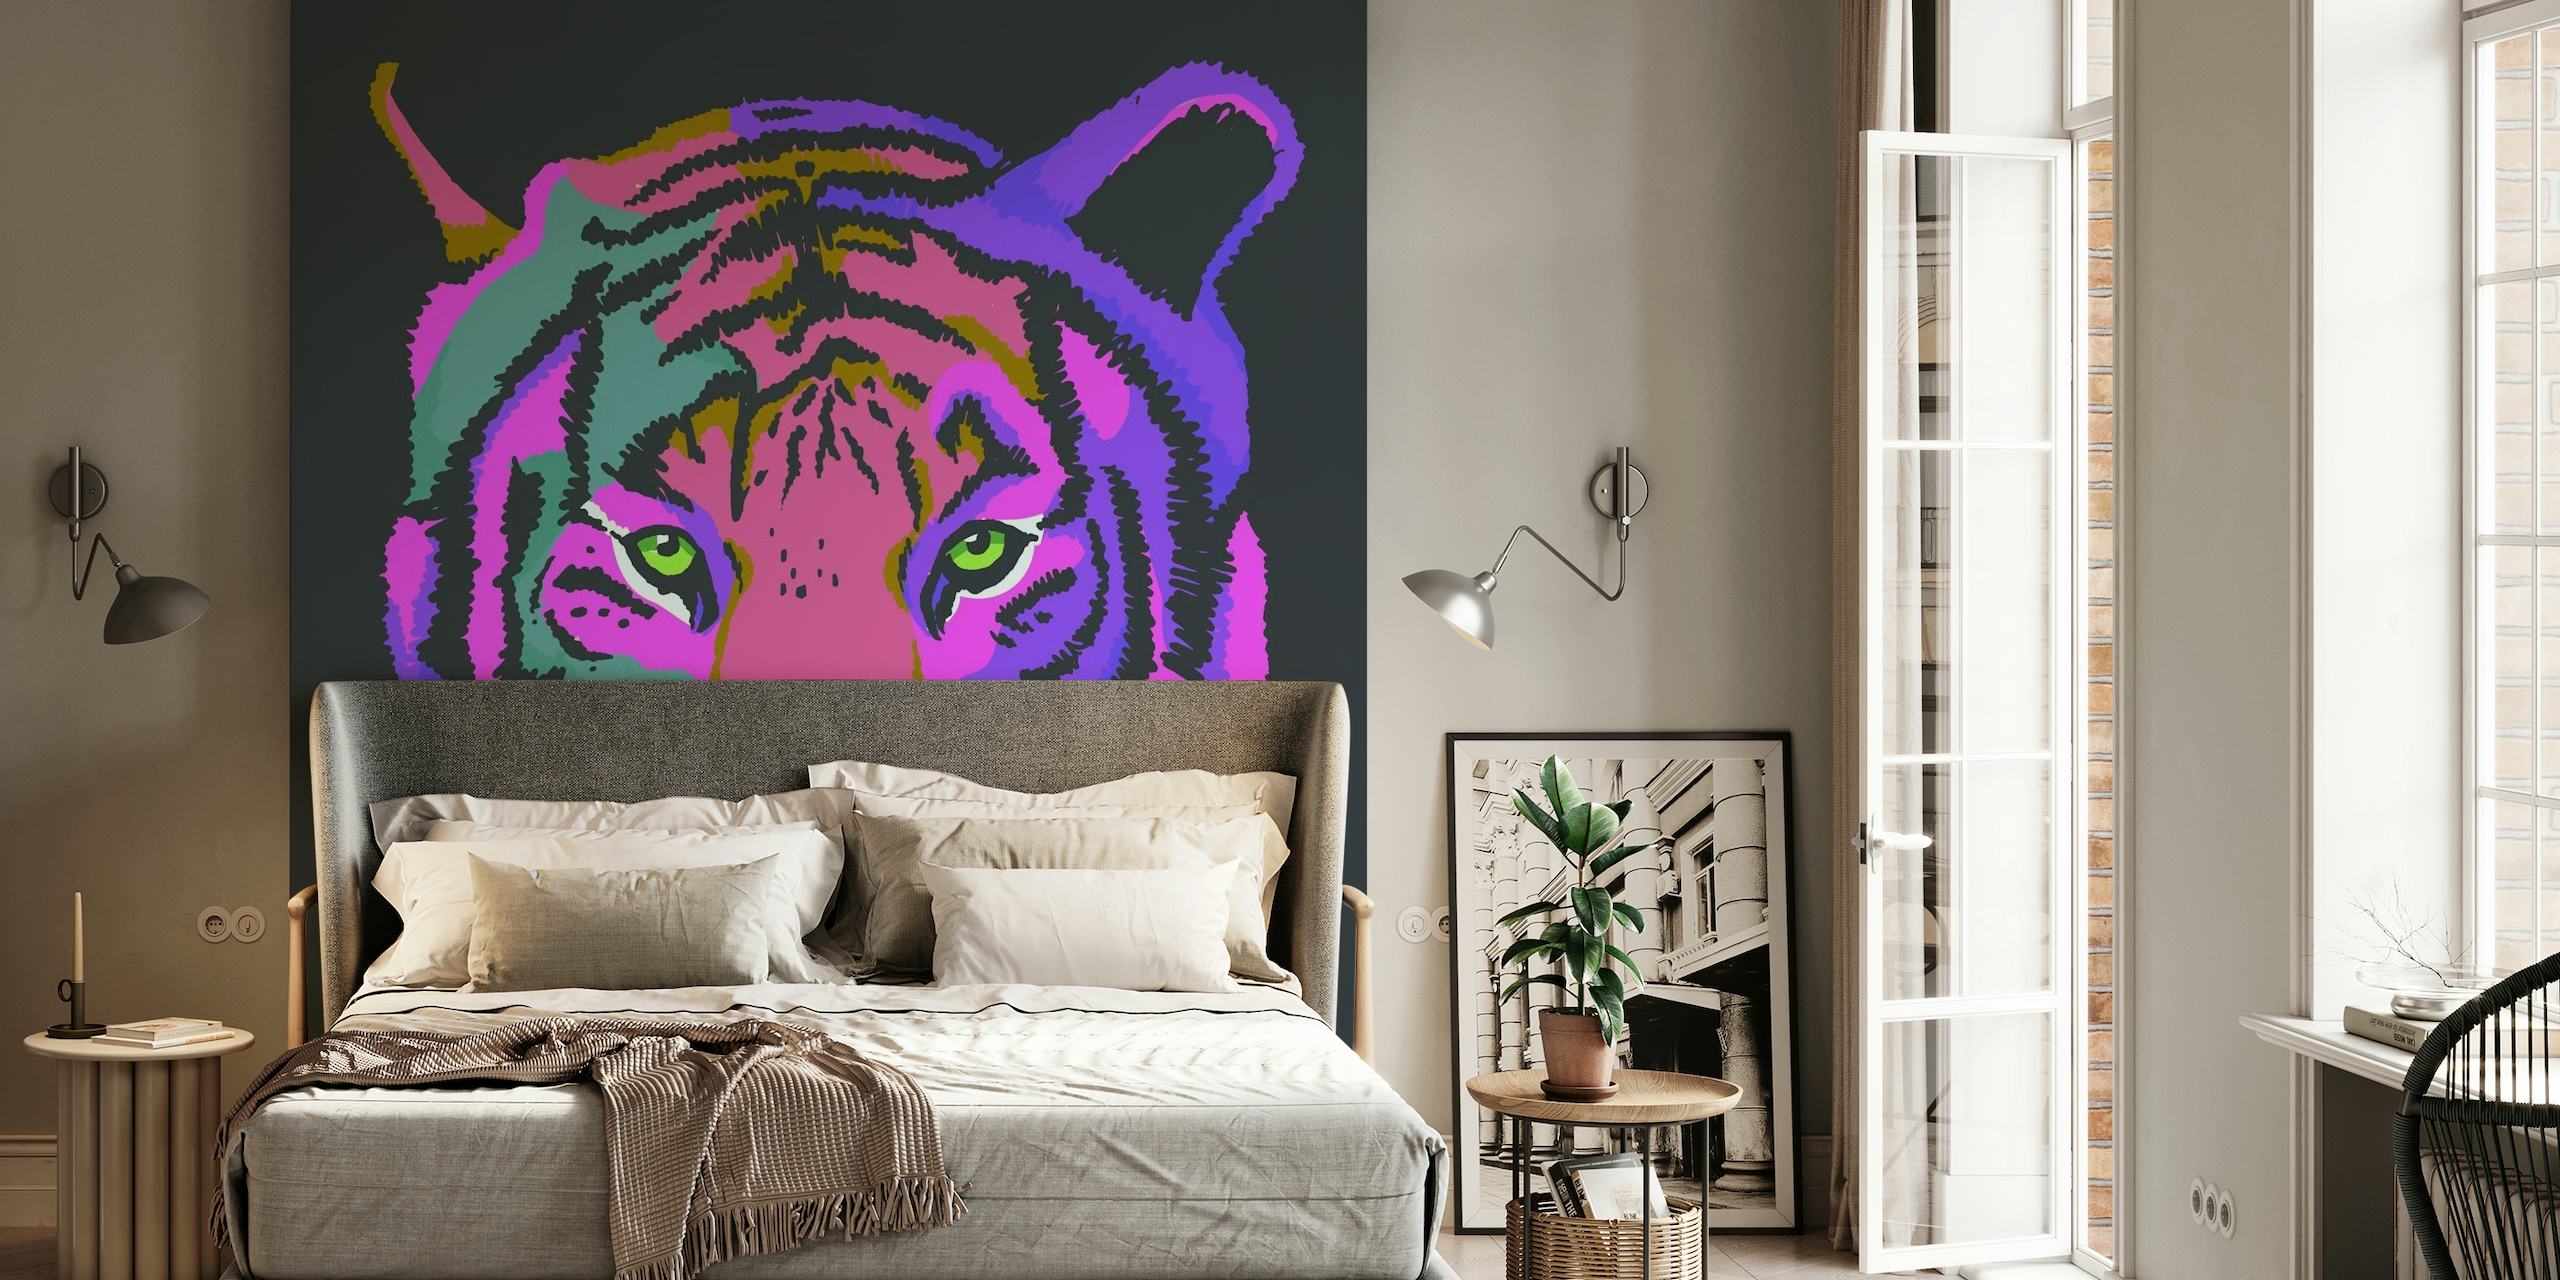 Et fargerikt veggmaleri med en stilisert tiger i nyanser av lilla og rosa mot en mørk bakgrunn.